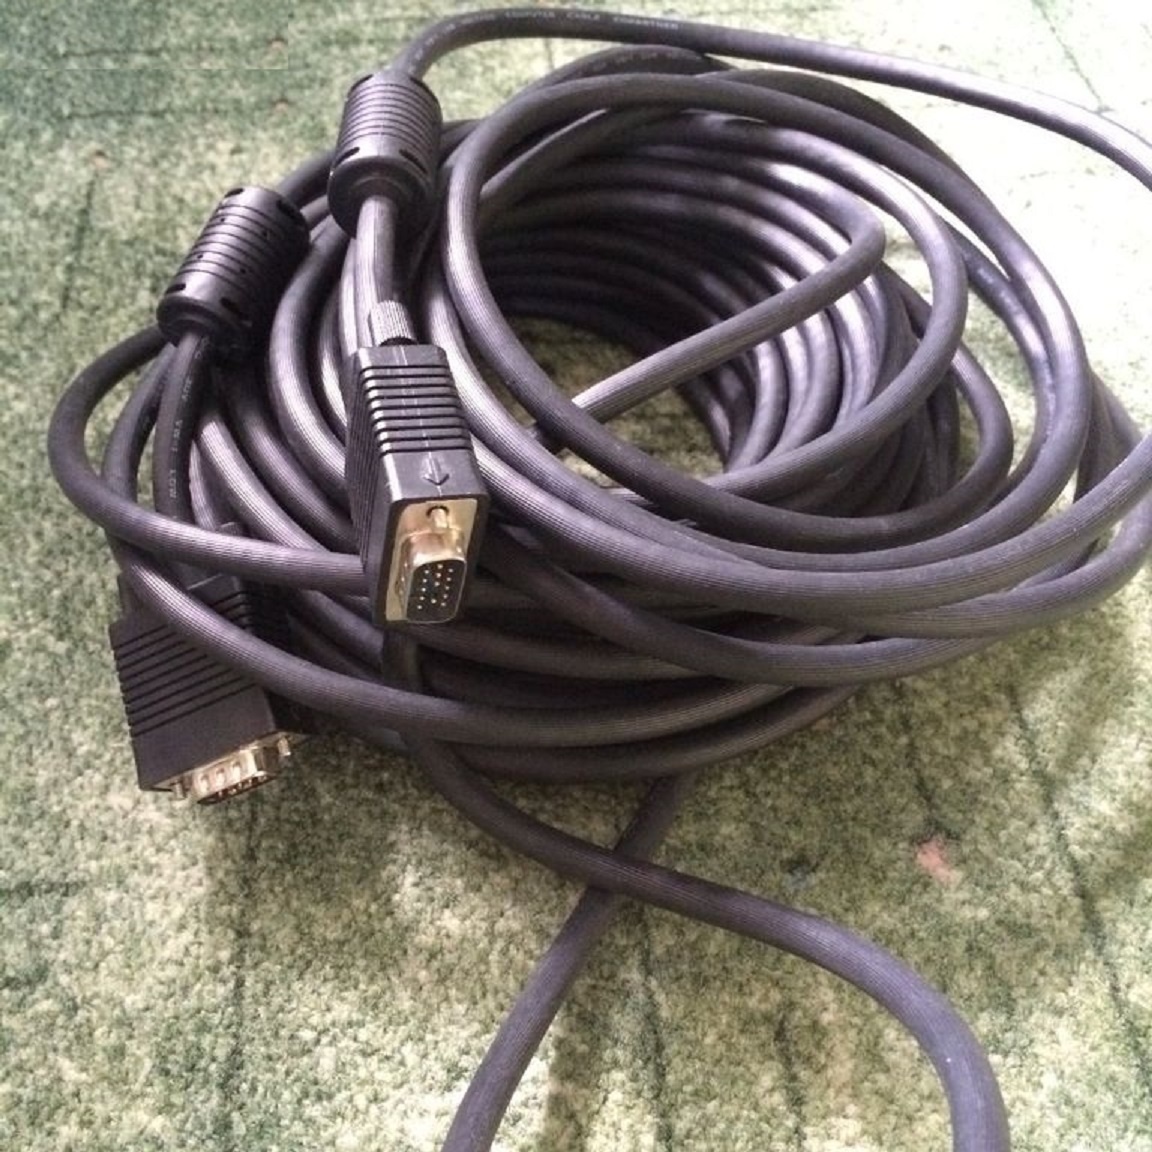 VGA kabel 15m